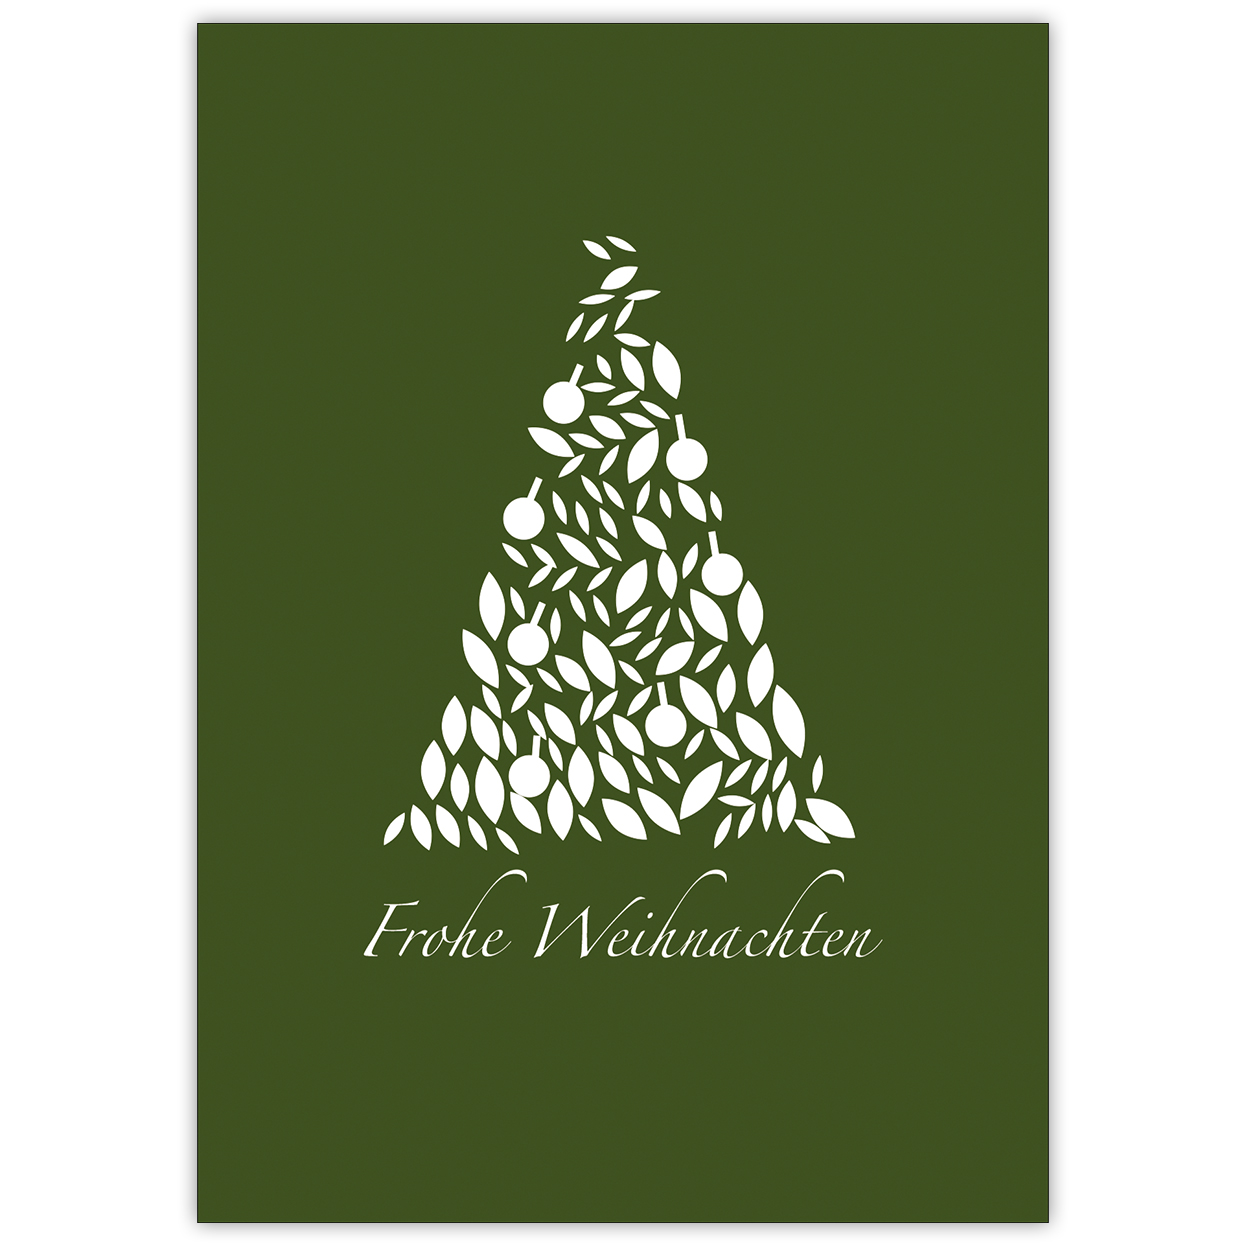 Elegante Weihnachtskarte in grün mit wunderschönem, grafischen Weihnachtsbaum: Frohe Weihnachten